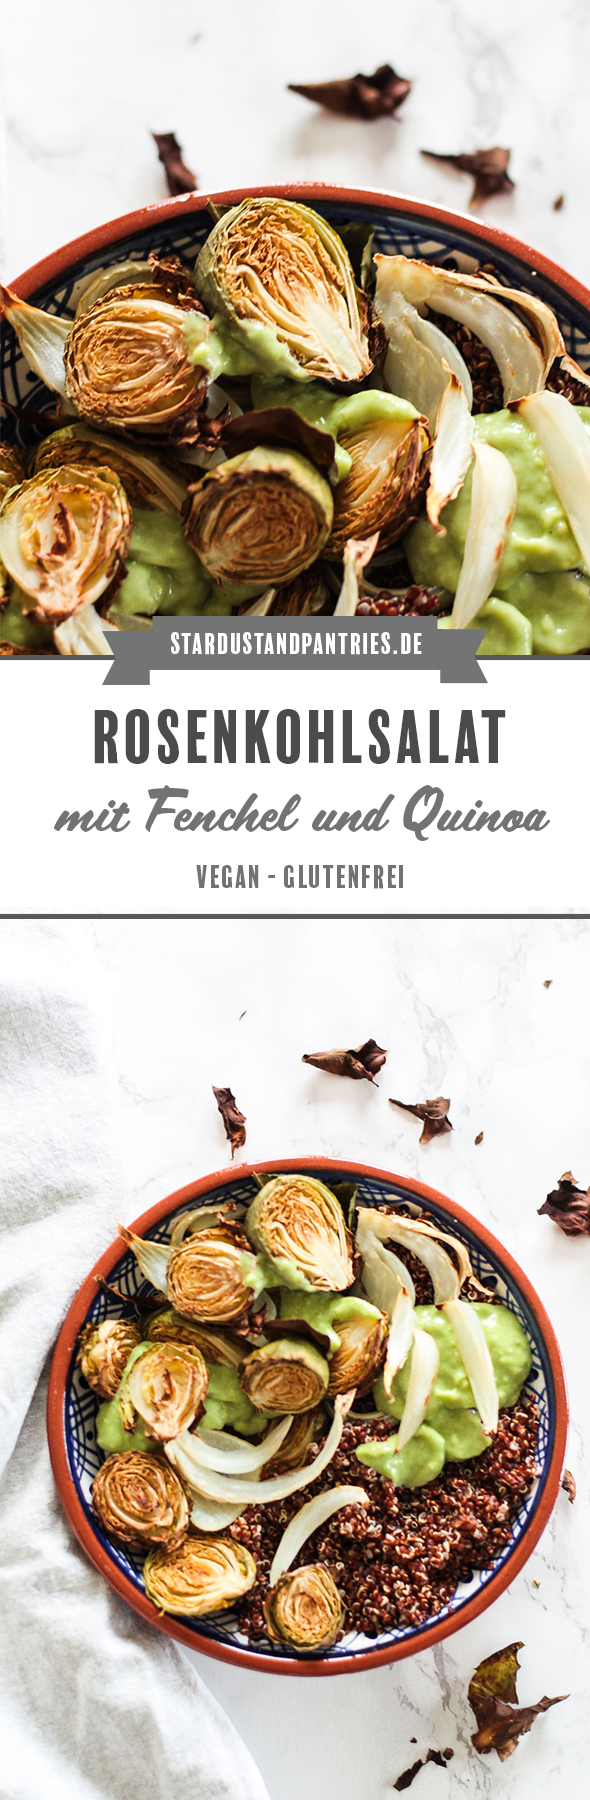 Warmer veganer Rosenkohlsalat mit geröstetem Fenchel und rotem Quinoa. Ein leckerer und gesunder Salat mit cremigem Avocado Dressing. #Salat #vegan #Quinoa #Rosenkohl #Fenchel #Rosenkohlsalat